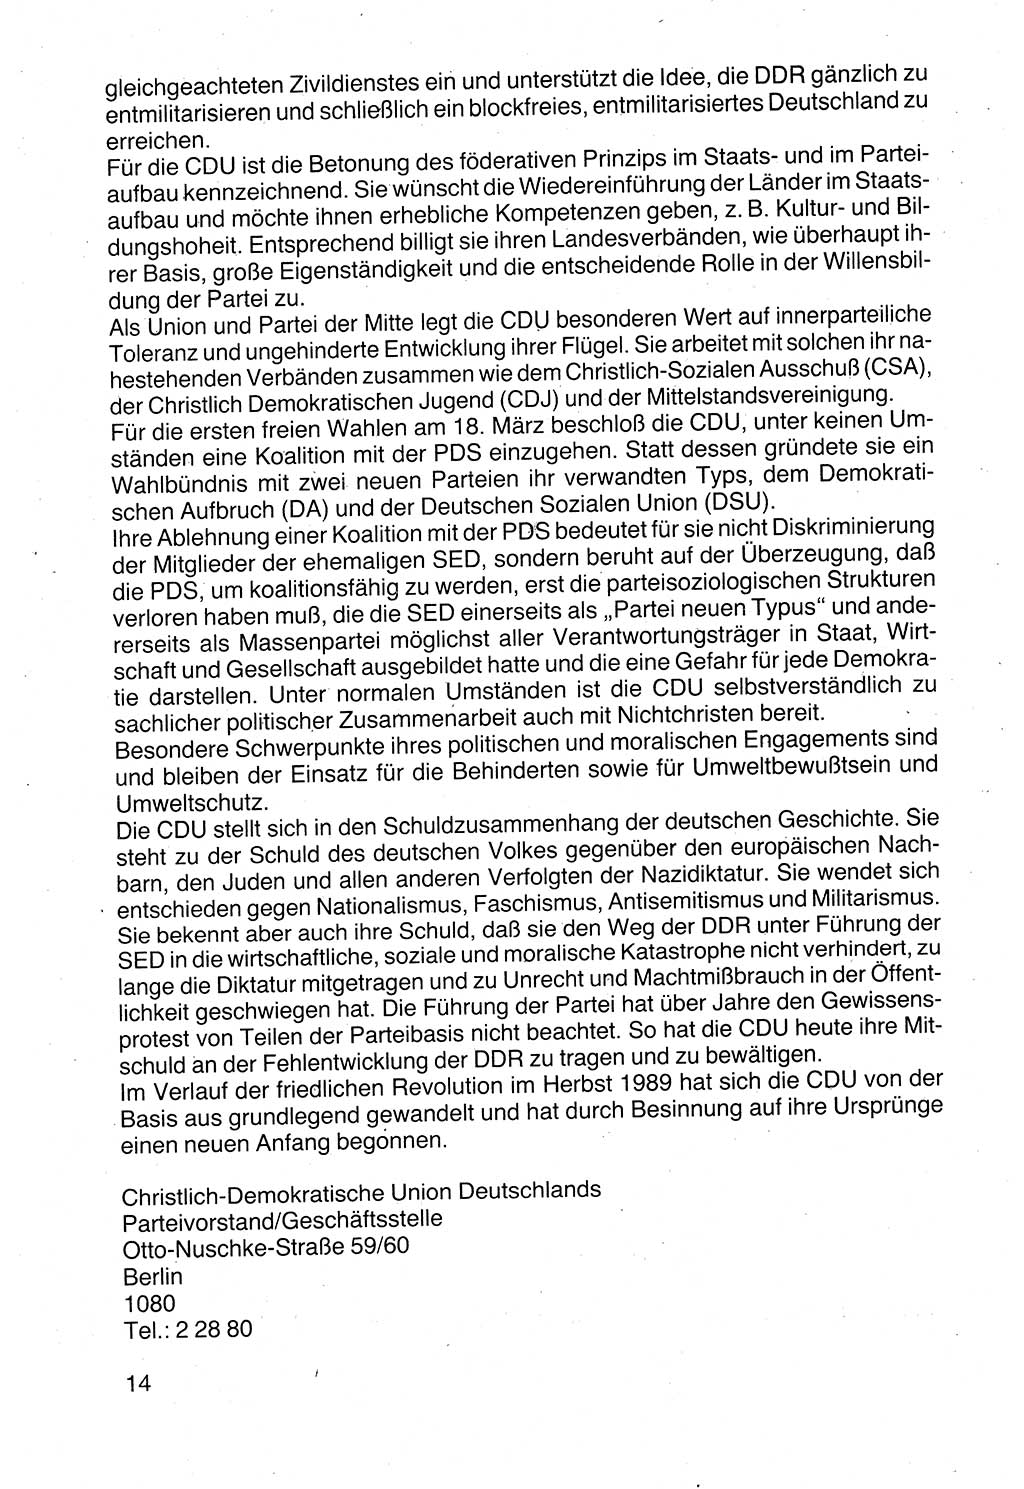 Politische Parteien und Bewegungen der DDR (Deutsche Demokratische Republik) über sich selbst 1990, Seite 14 (Pol. Part. Bew. DDR 1990, S. 14)